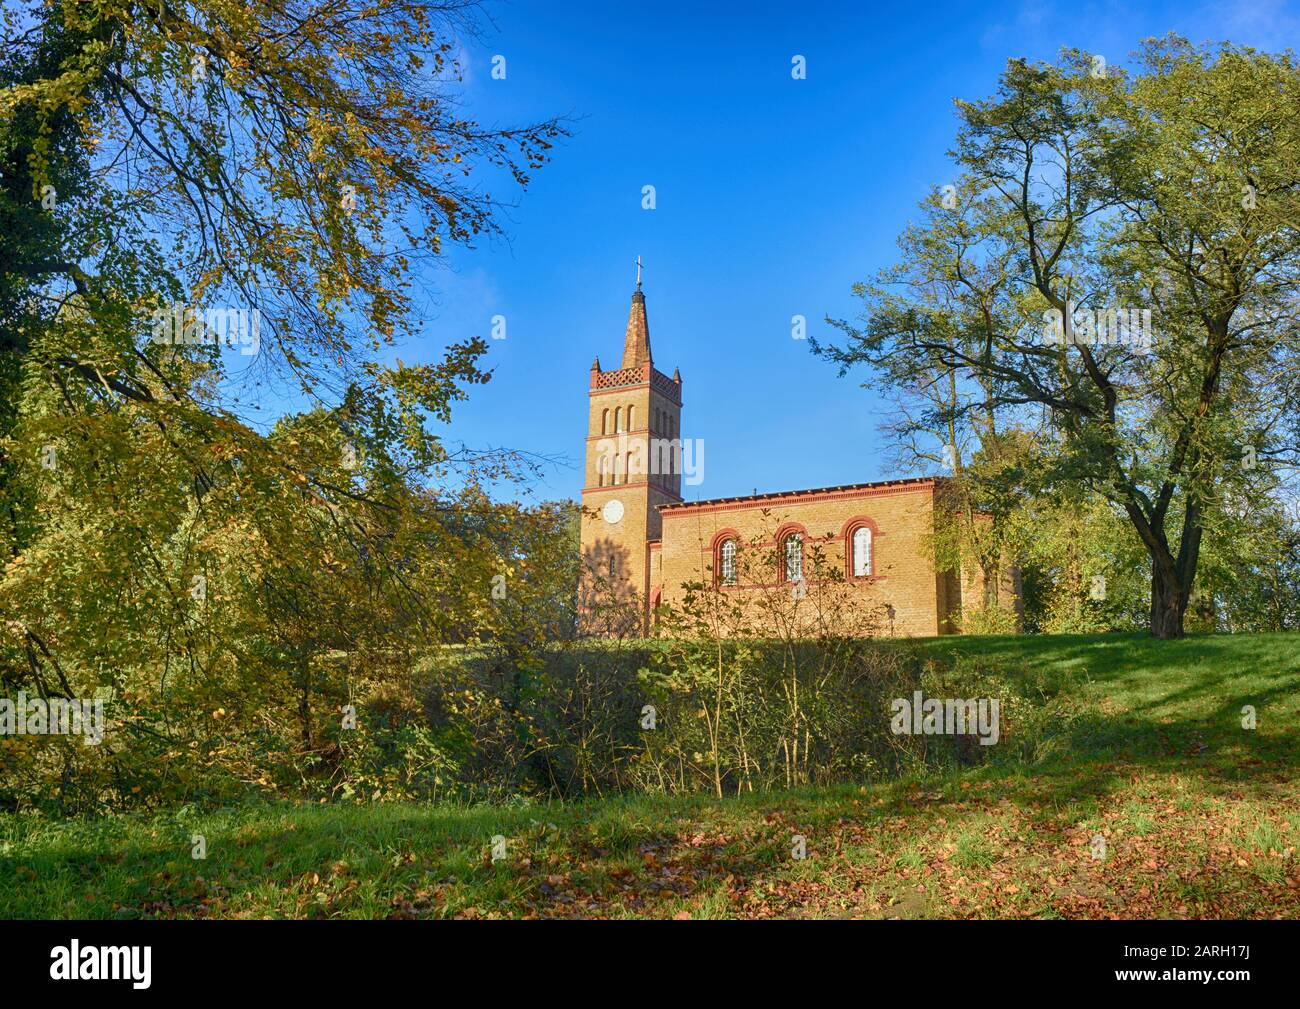 Petzow near Werder Havel Church by Architect Schinkel Stock Photo